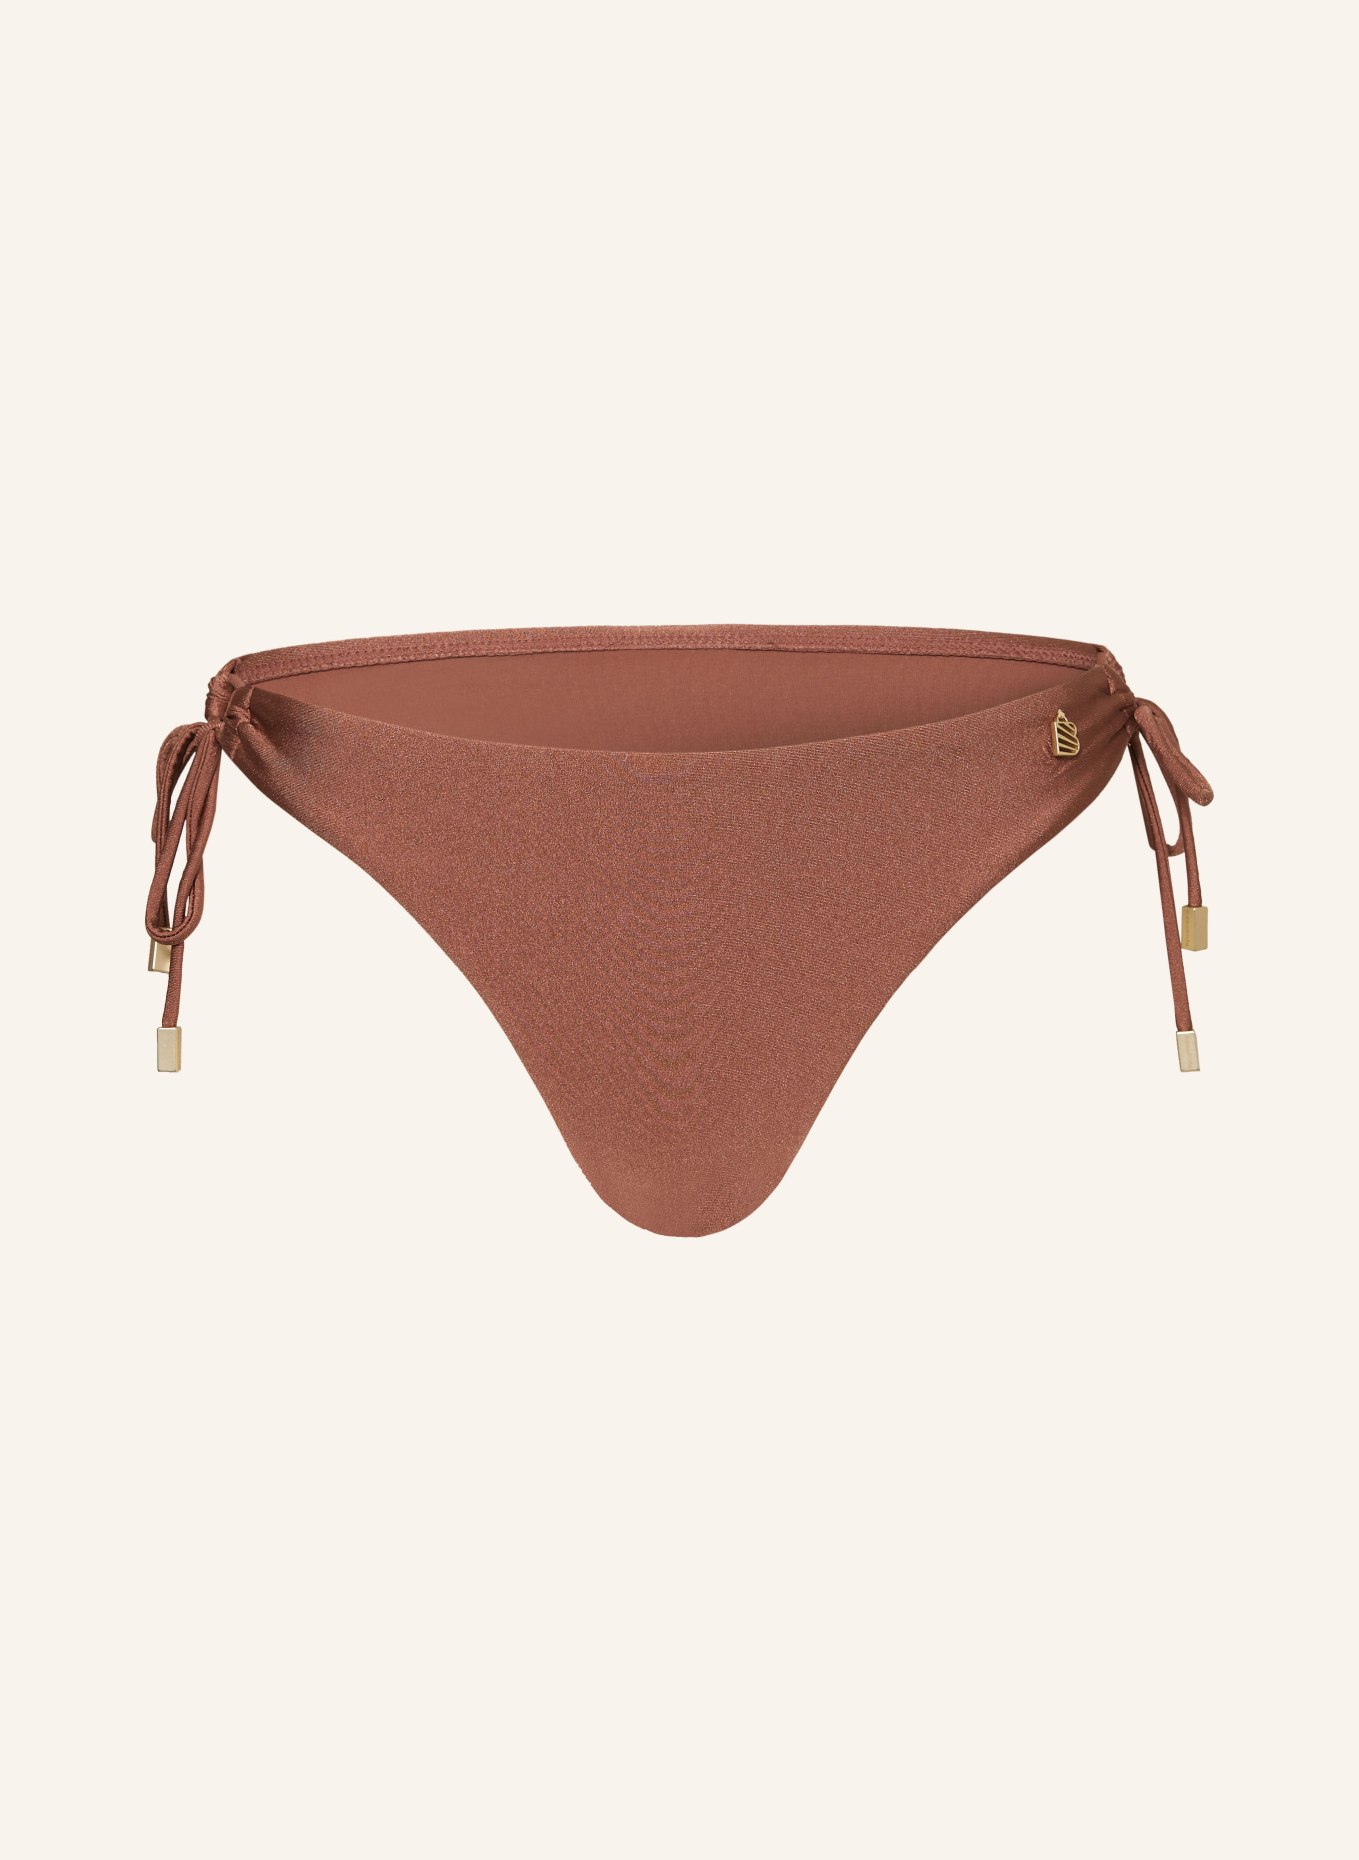 BEACHLIFE Basic bikini bottoms CHOCOLATE SHINE, Color: BROWN (Image 1)